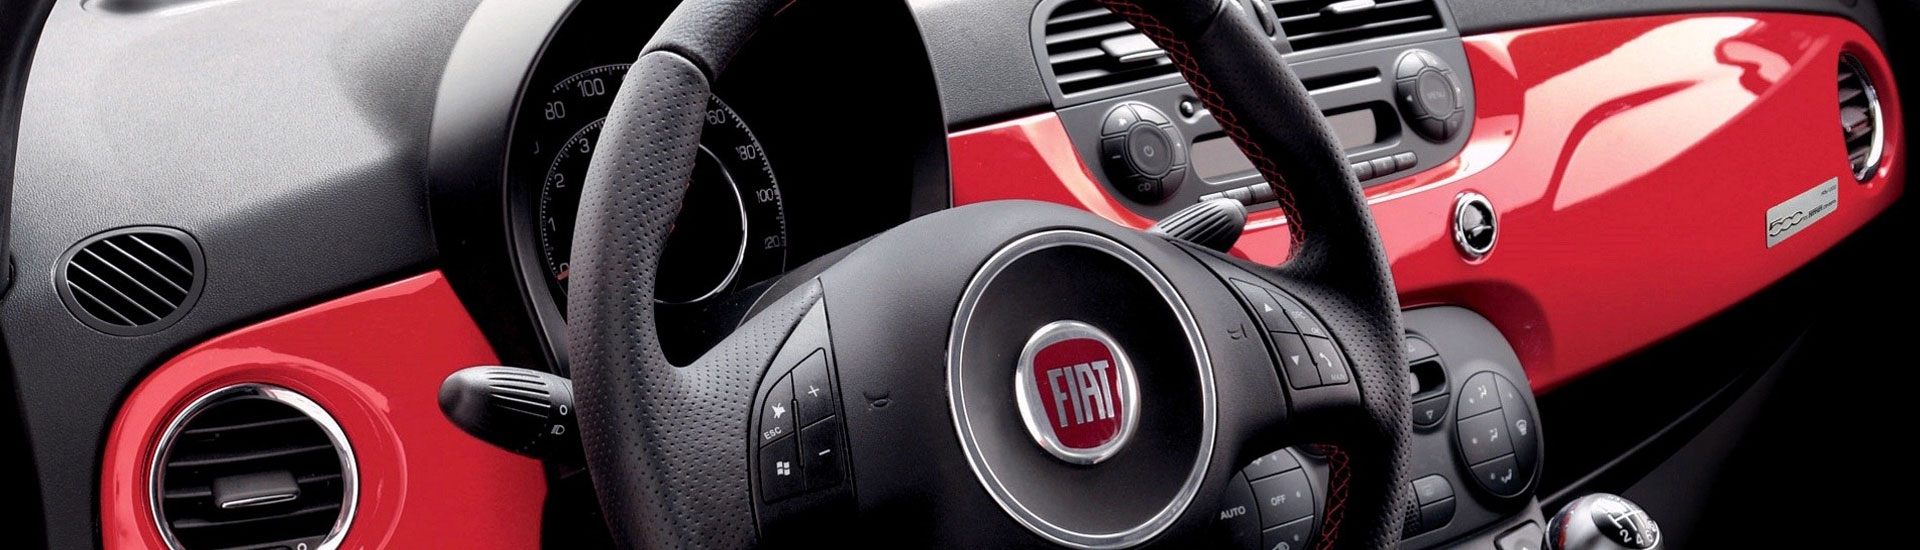 2020 Fiat 500L Custom Dash Kits